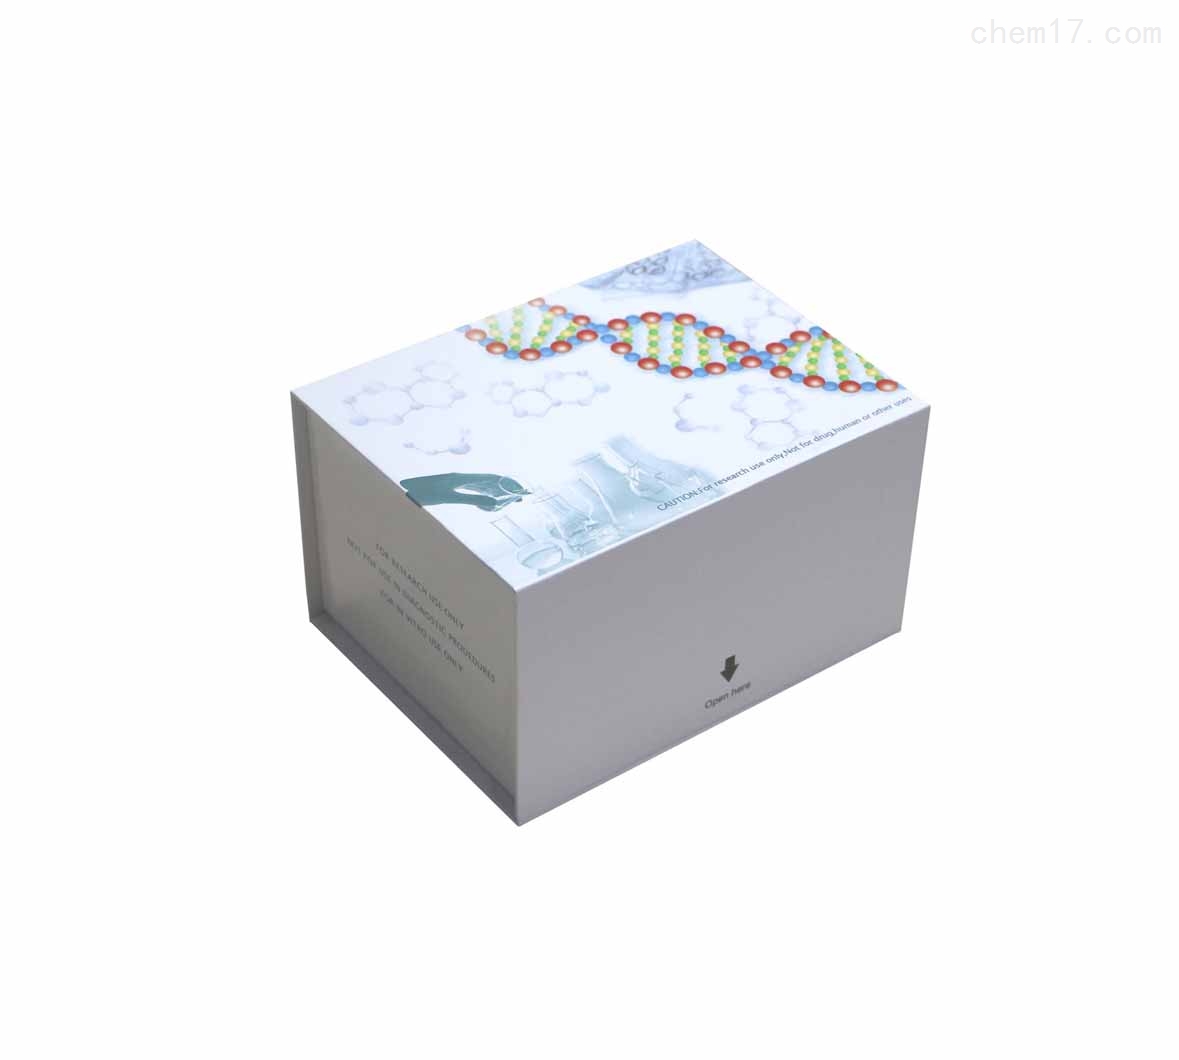 人Ⅲ型胶原蛋白(COLⅢ)ELISA试剂盒质量保证